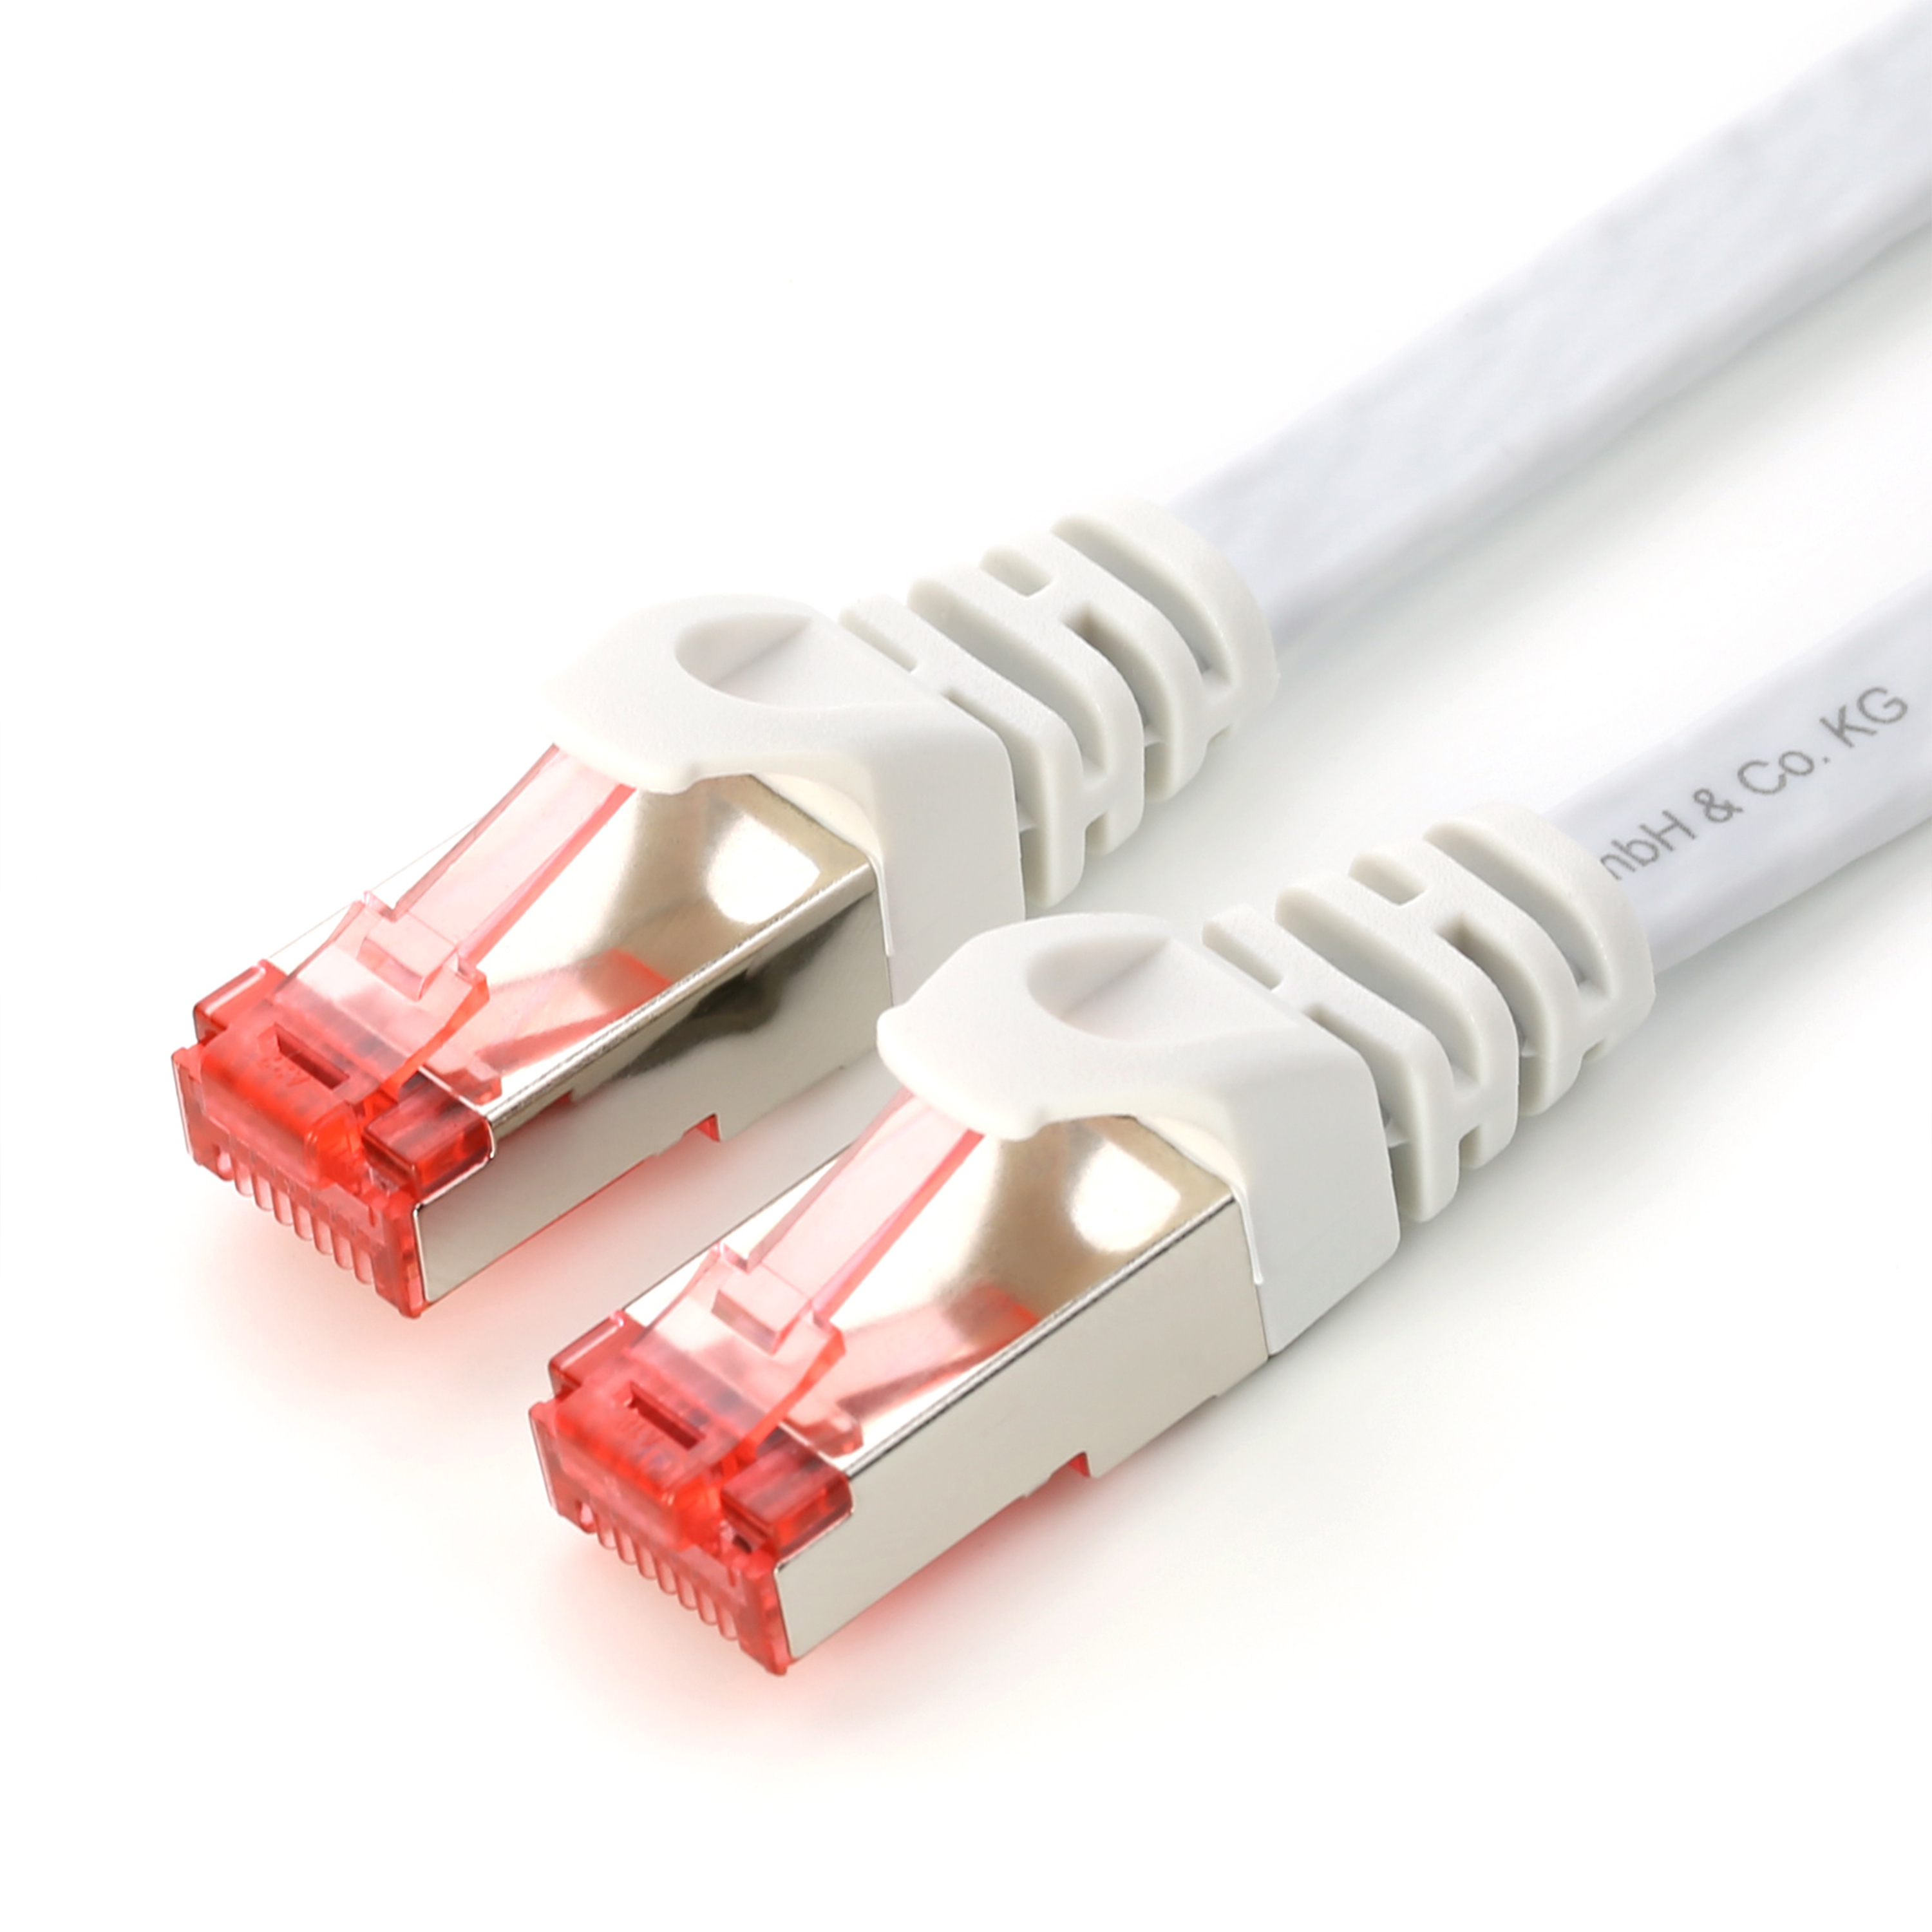 CSL 0,25m Flachband Patchkabel Cat7 weiß-roter FTP Stecker, weiß weiß LAN Kabel